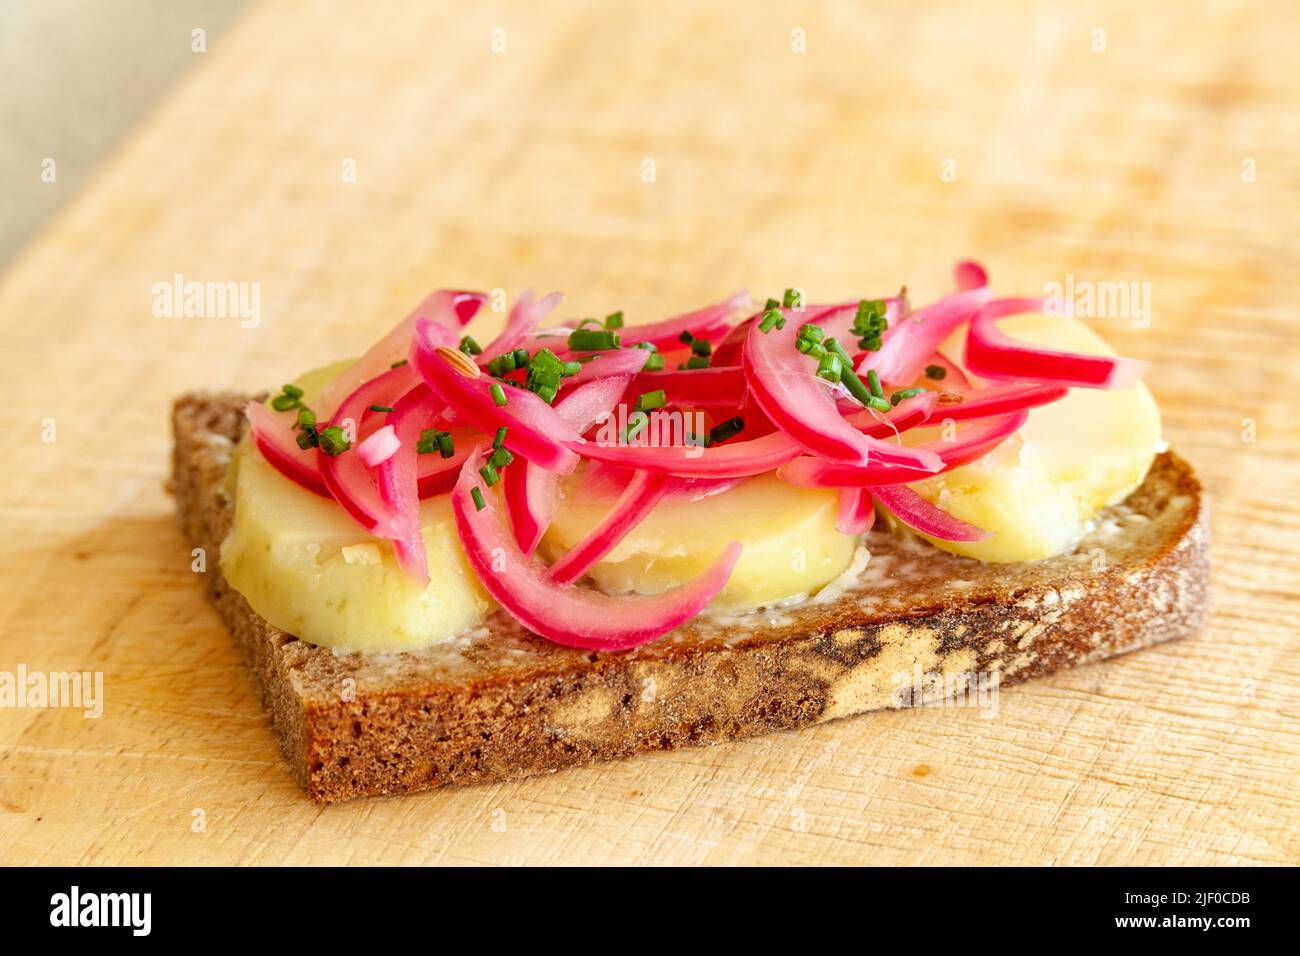 Sándwich abierto de cebolla roja encurtida y patata al estilo danés Foto de stock